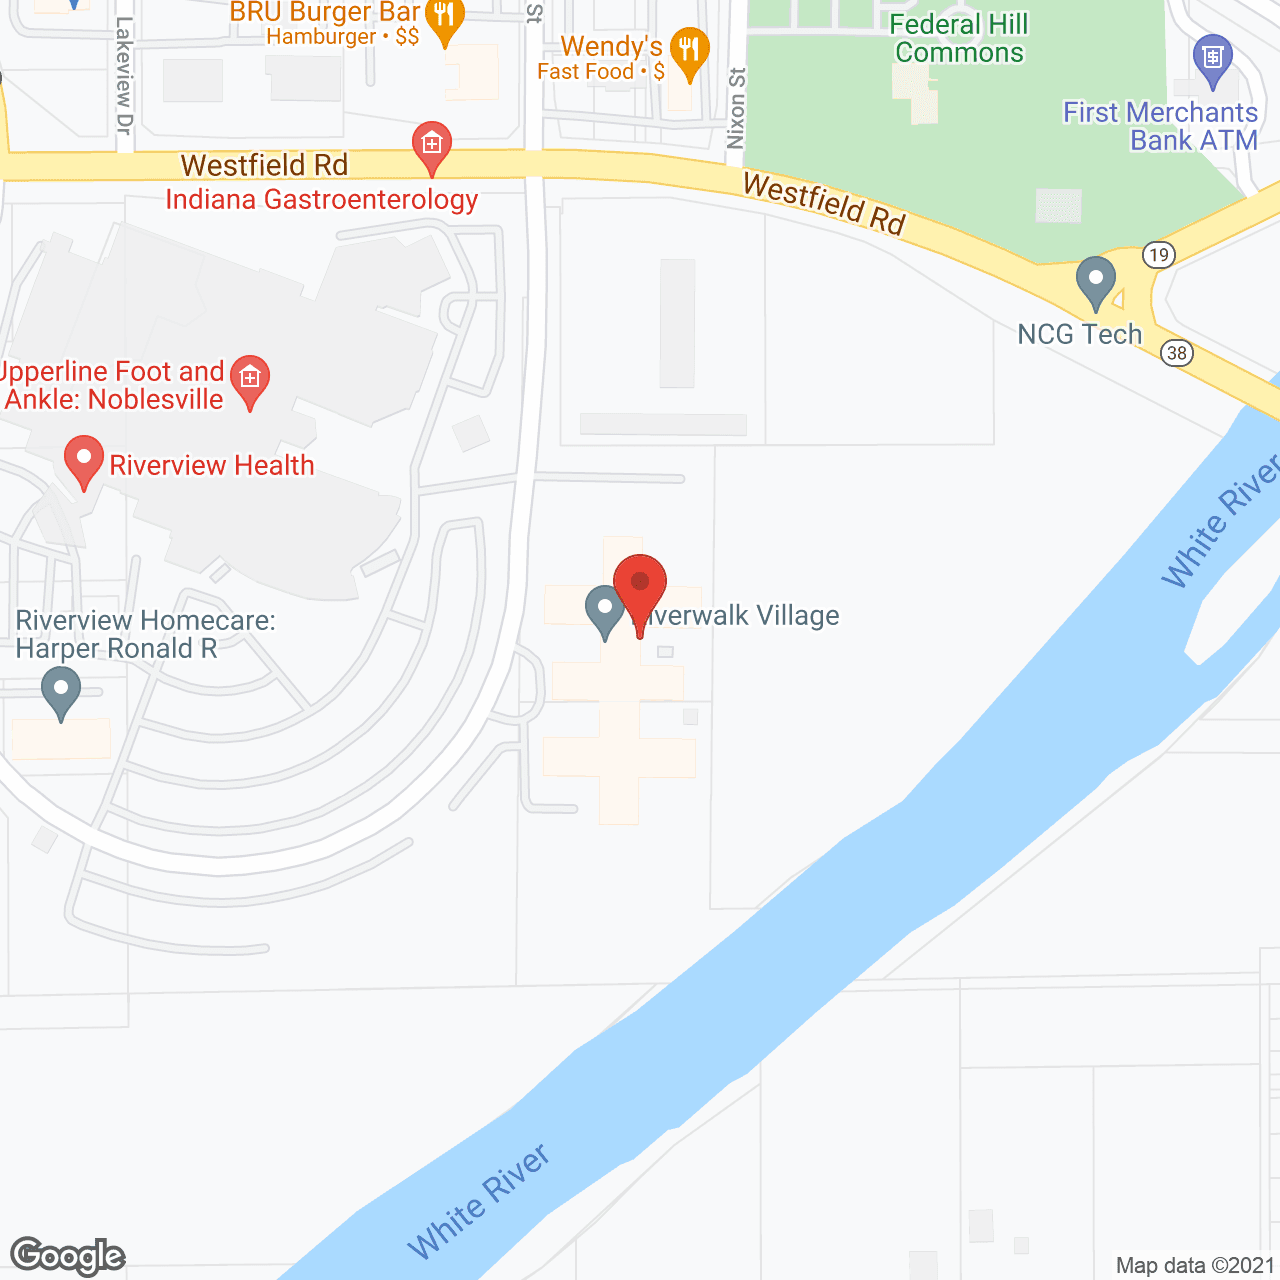 Riverwalk Village in google map